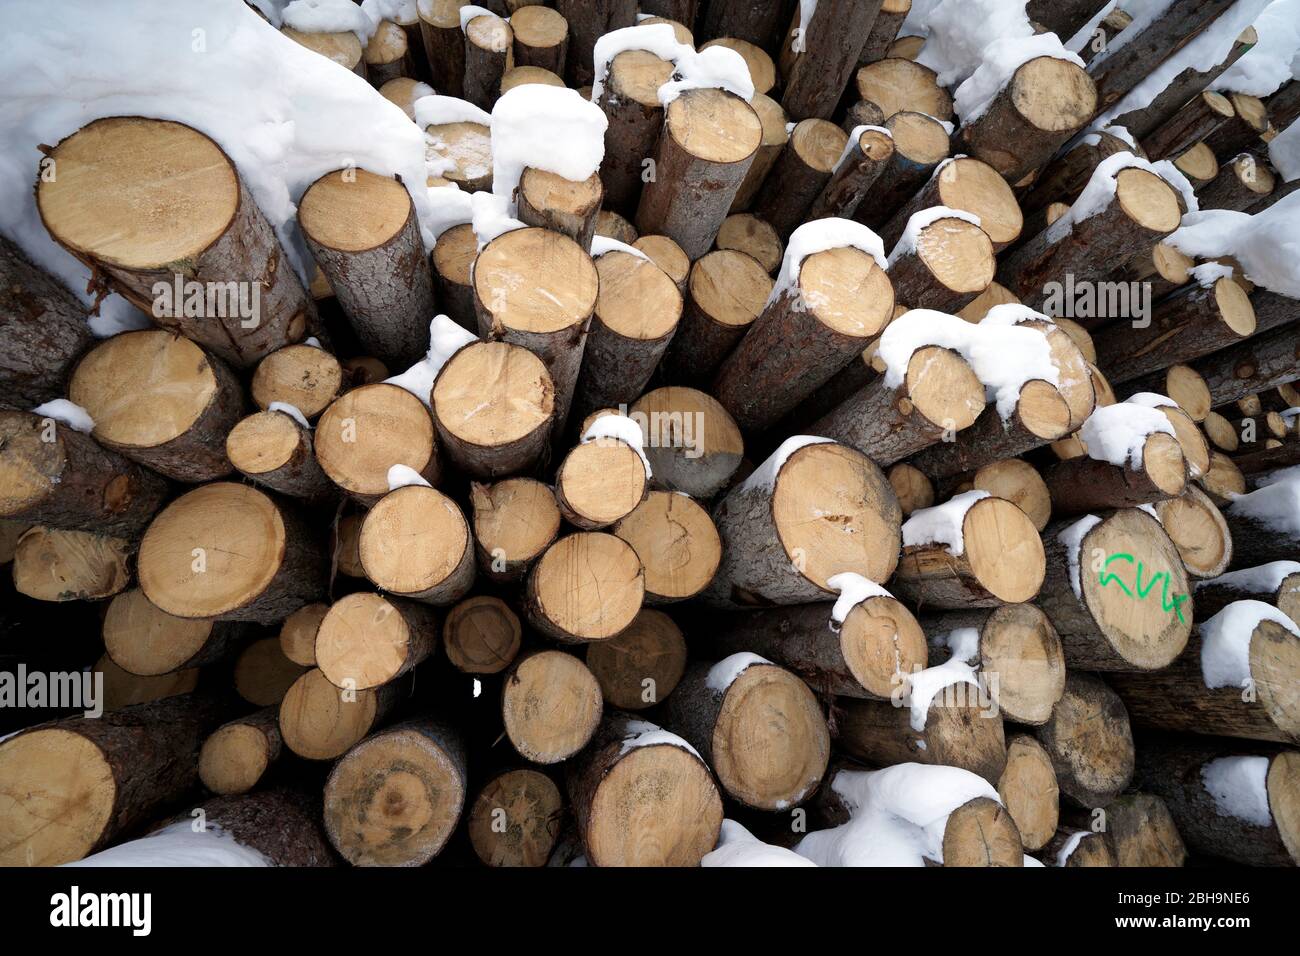 Österreich, Tirol, Stubaital, Neustift, gestapelte Baumstämme, Holzstapel, Rundholz, Winter, mit Schnee bedeckt Stockfoto